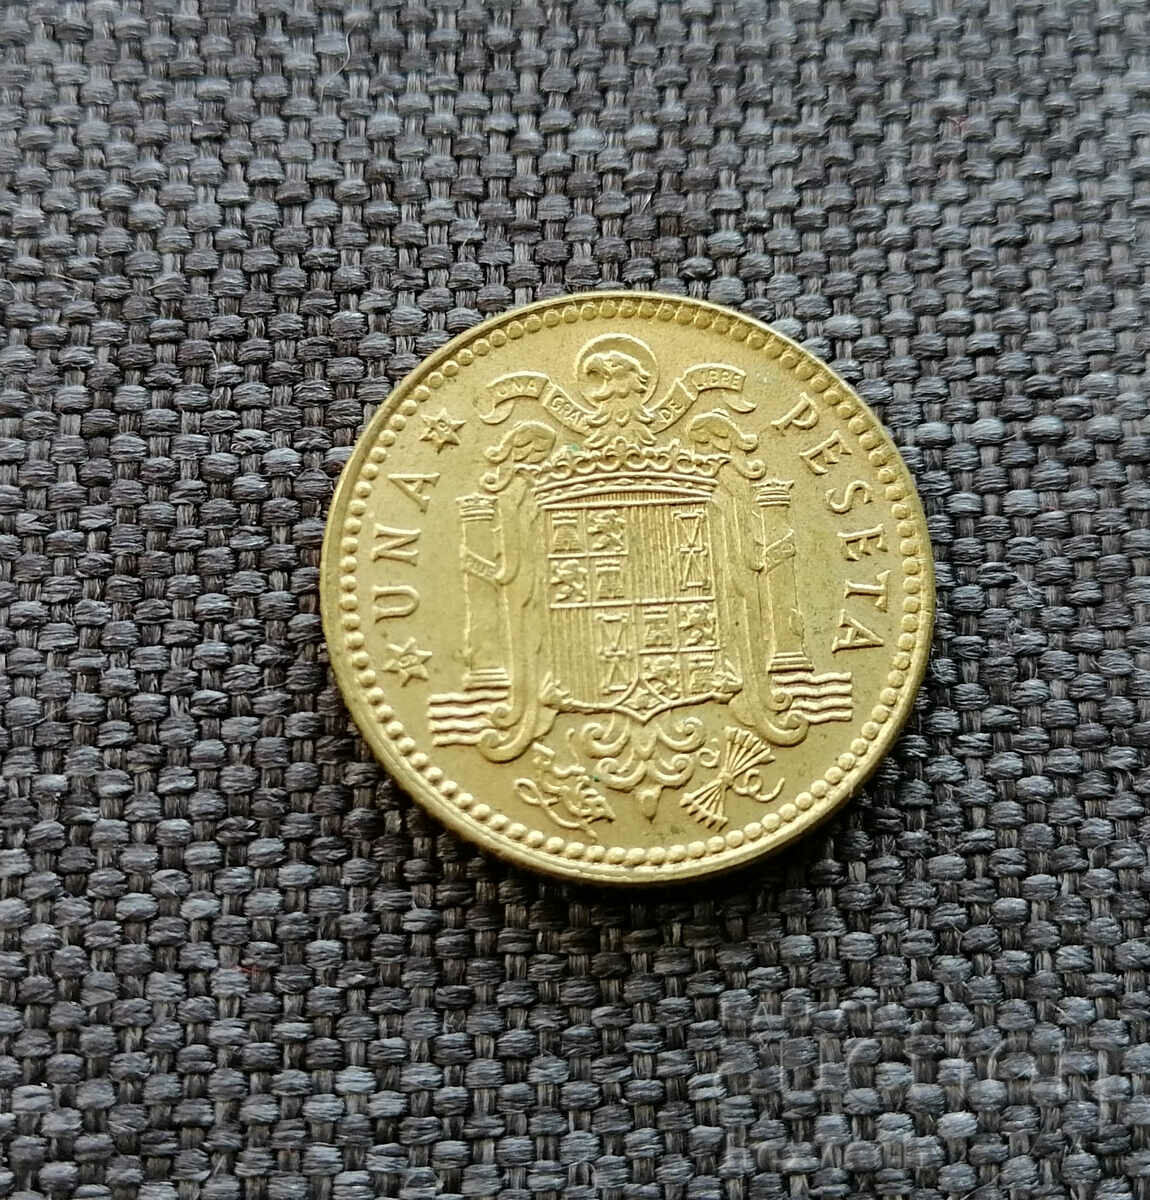 ❤️ ⭐ Spain 1975 1 peseta ⭐ ❤️